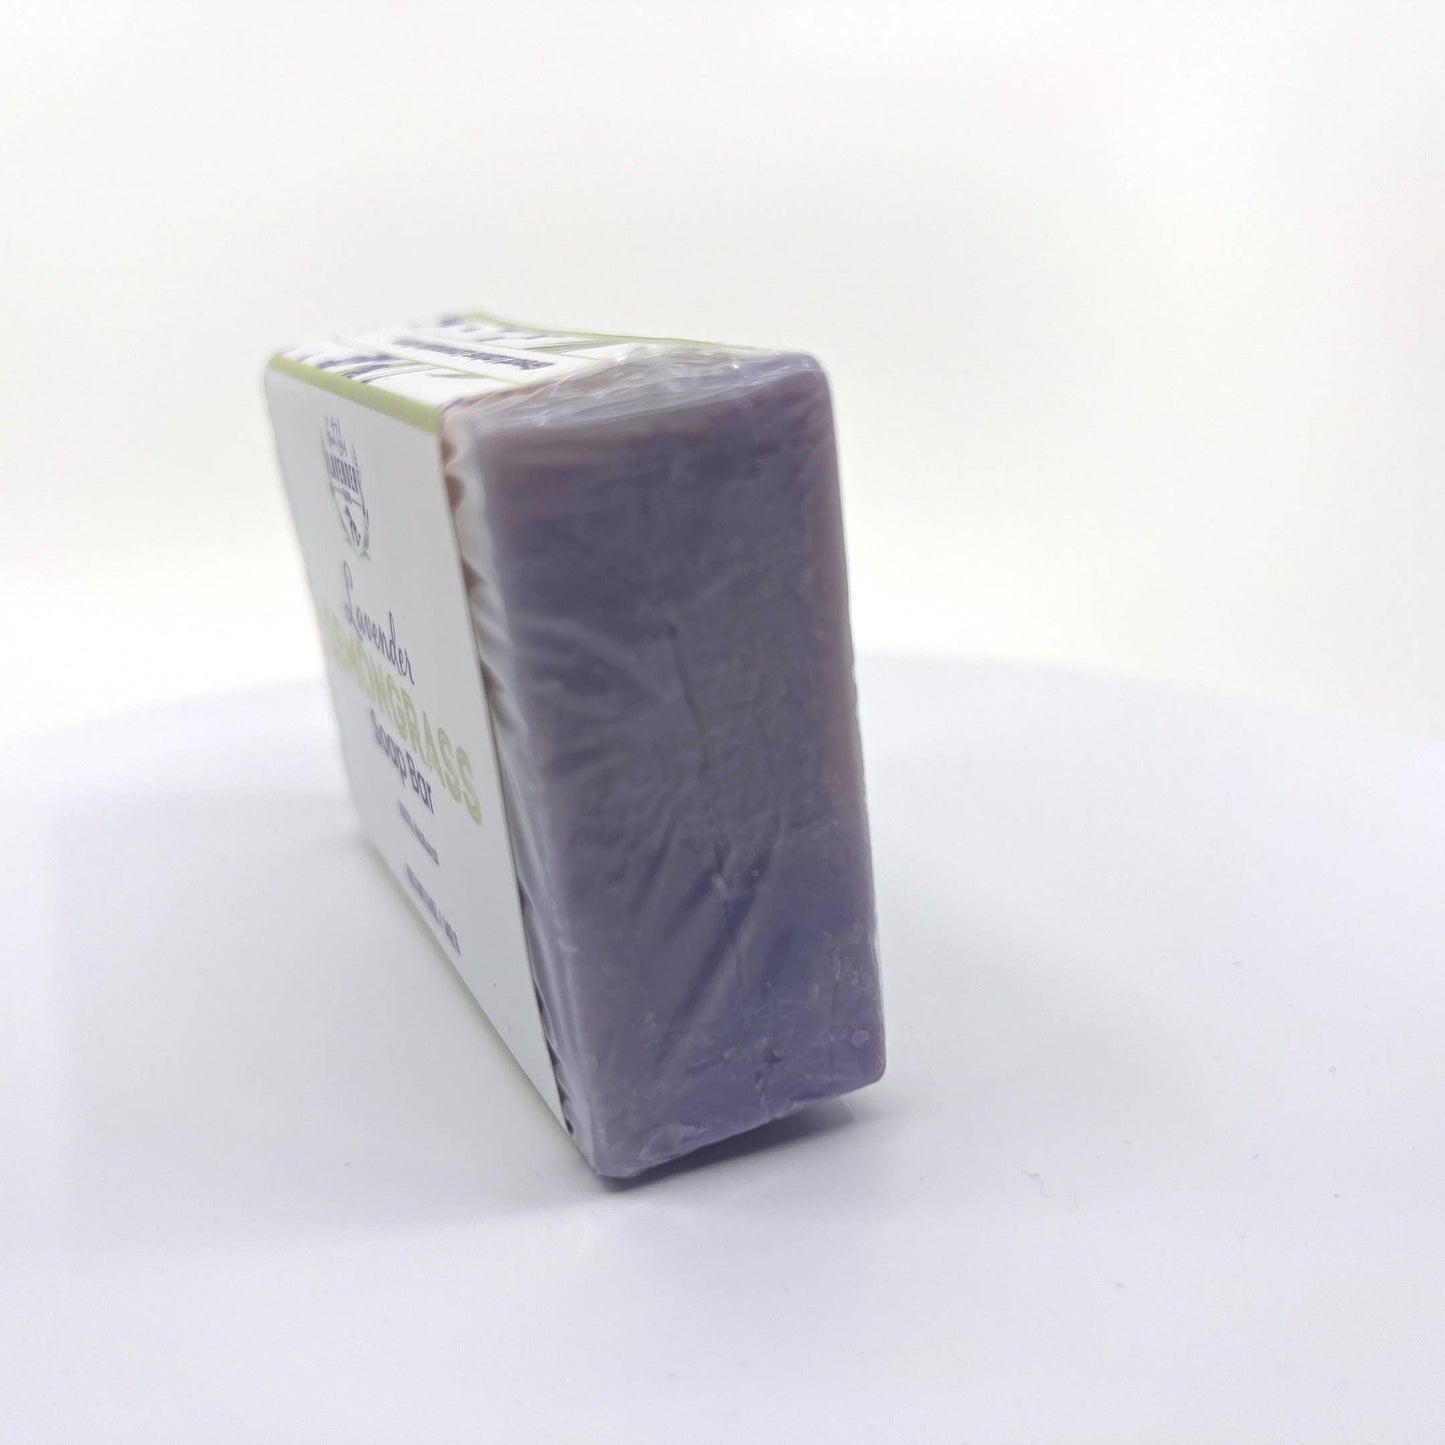 Lavender Lemongrass Soap Bar - Handmade Cold Process - 5 oz